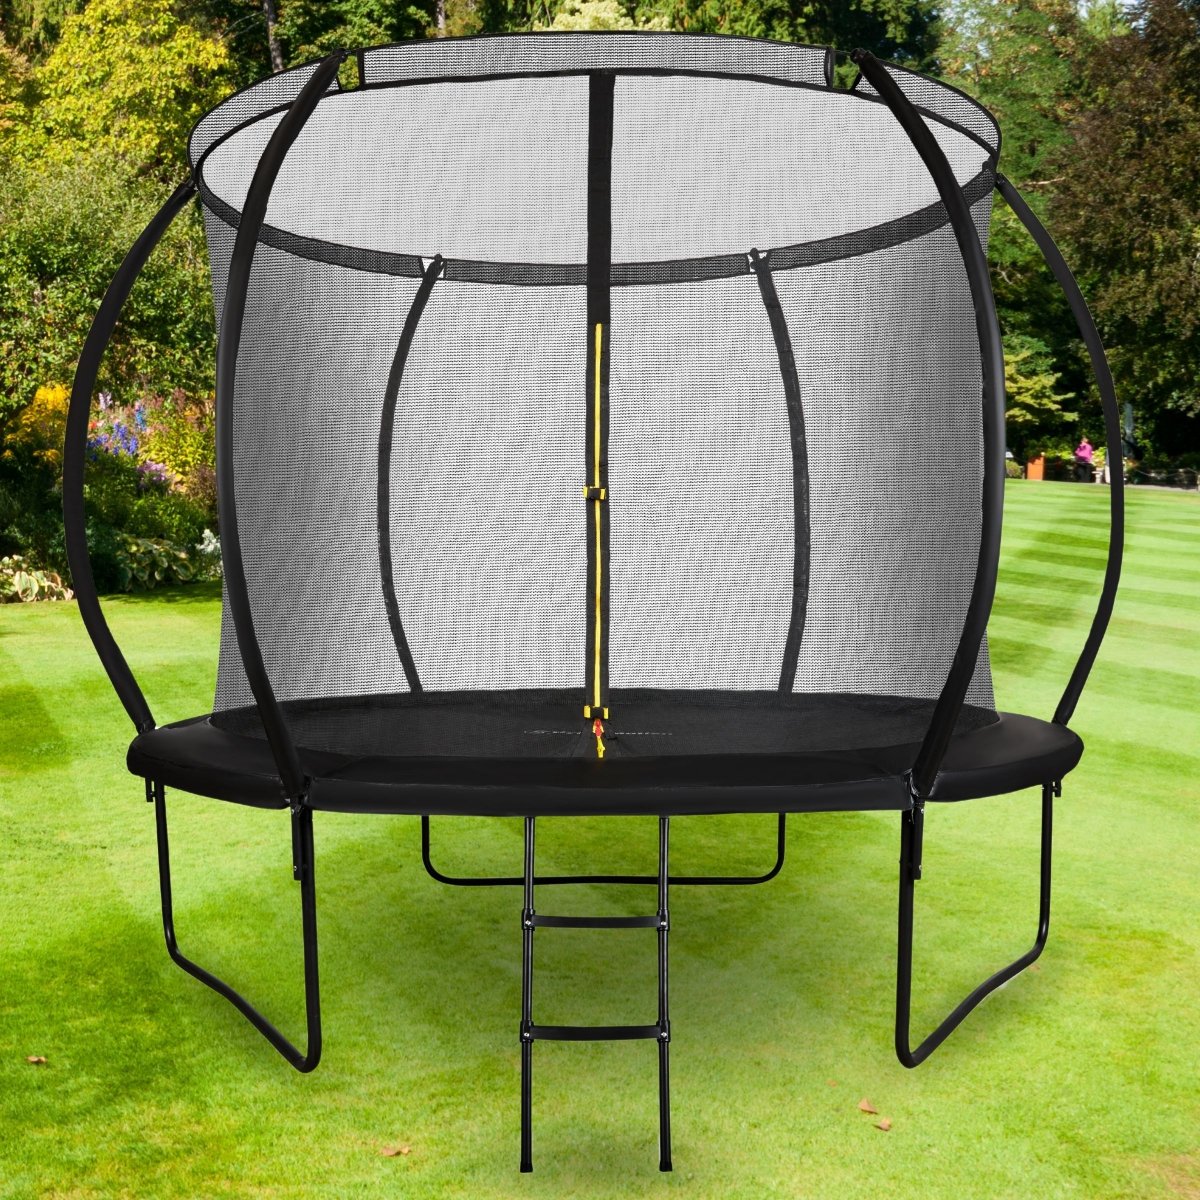 Trampolina ogrodowa XL dla dzieci HyperMotion - 305 cm 10FT - z drabinką i siatką wewnętrzną - do domu i ogrodu